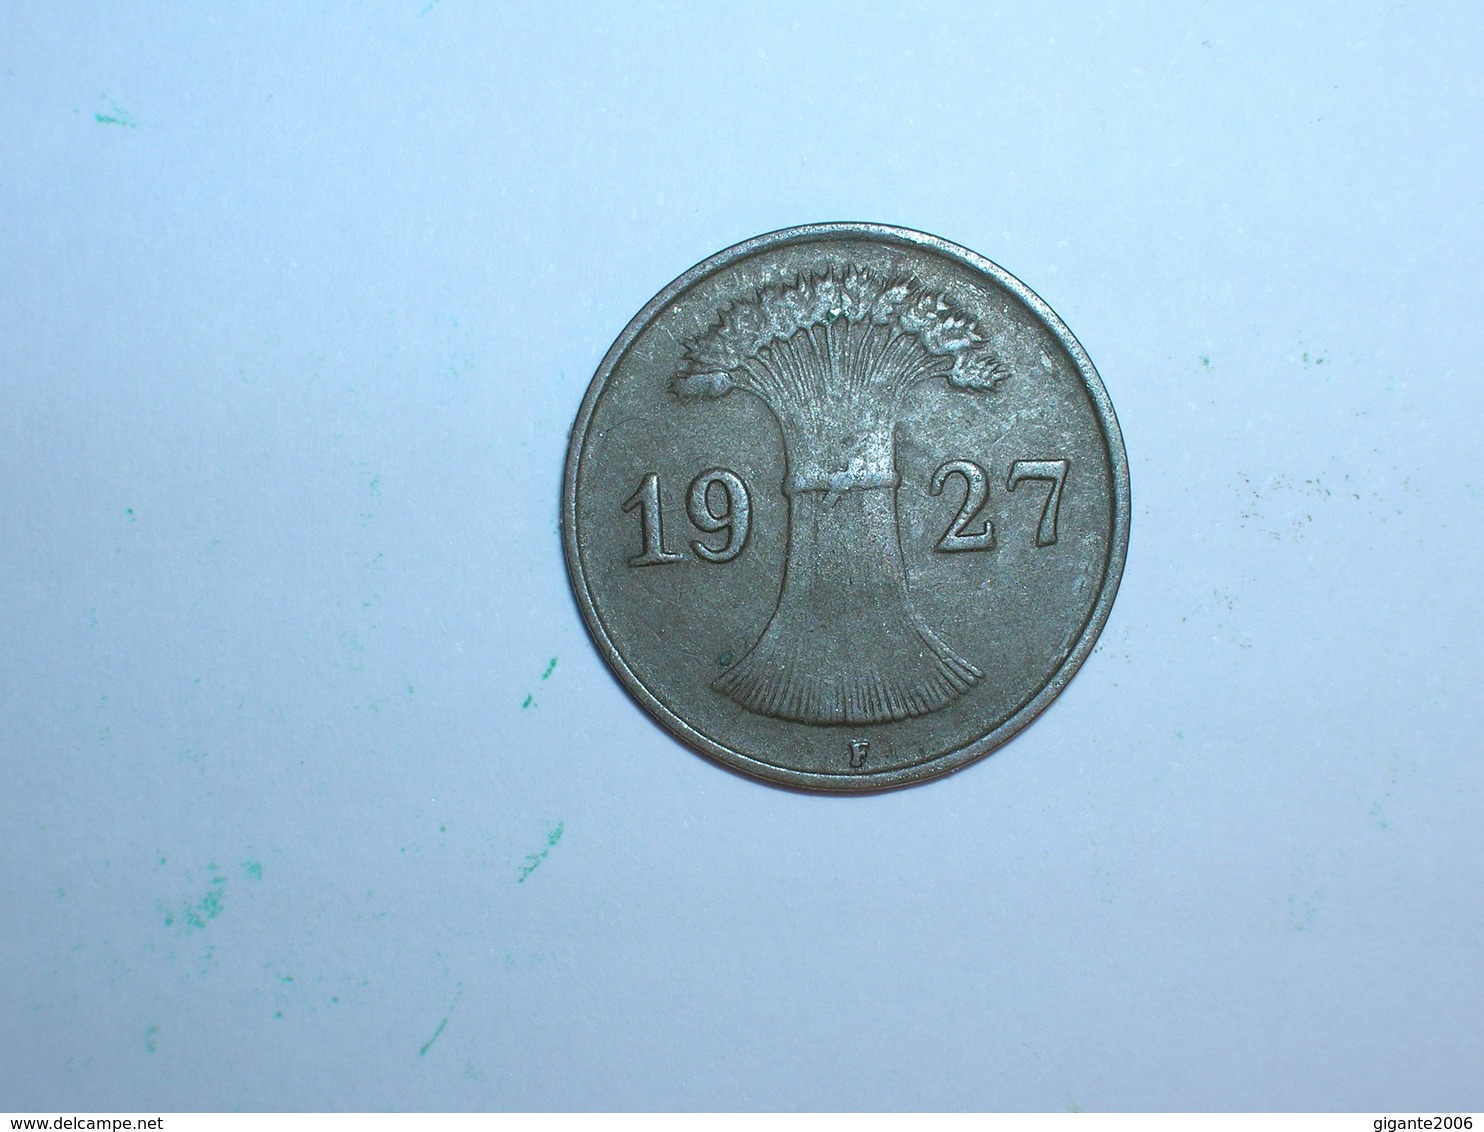 ALEMANIA 1 REICHPFENNIG 1927 F (1121) - 1 Rentenpfennig & 1 Reichspfennig